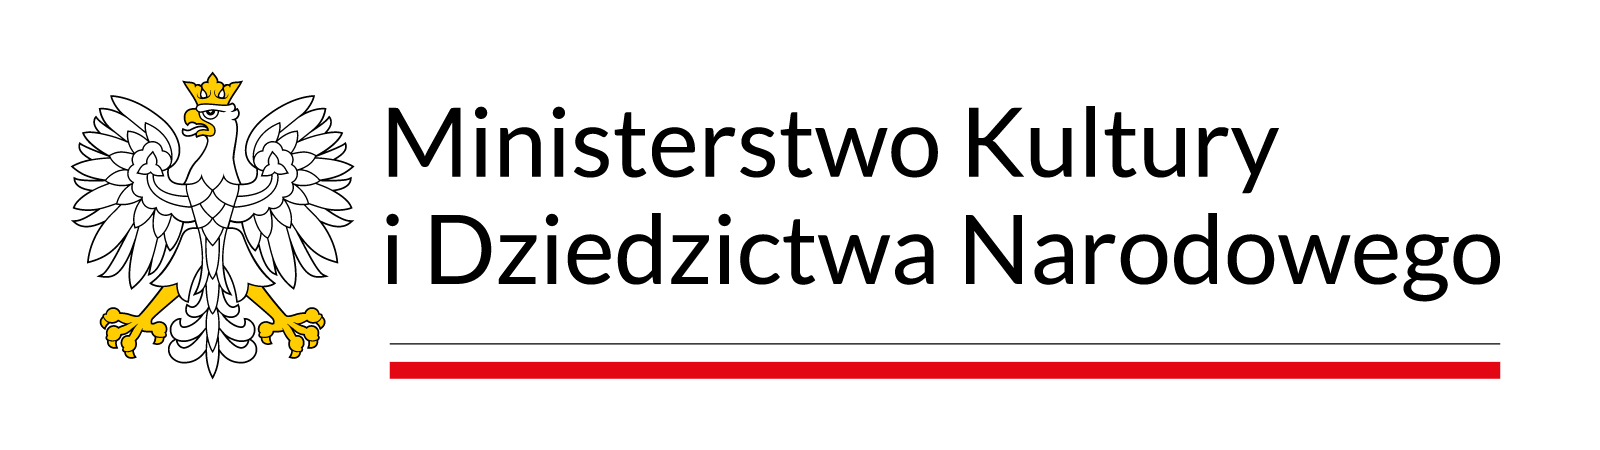 logo Ministerstwa Kultury i dziedzictwa Narodowego przedstawiające orła